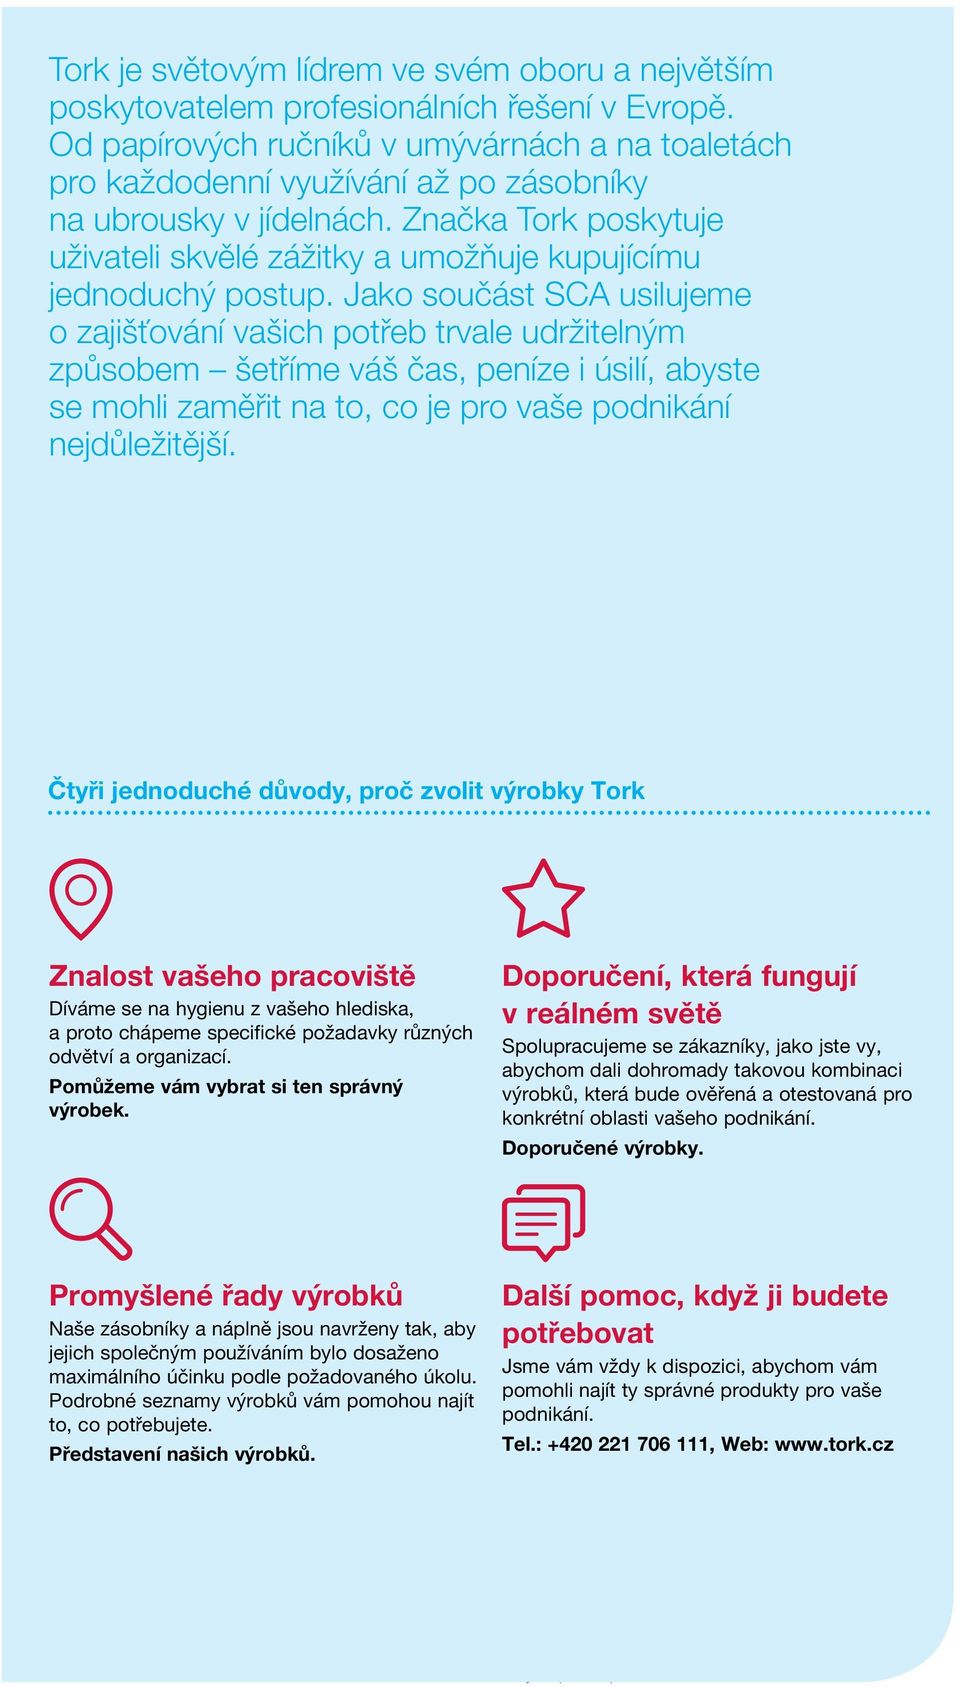 from Značka how Tork our poskytuje uživateli customers skvělé use zážitky Tork products a umožňuje and kupujícímu jednoduchý services so we postup.